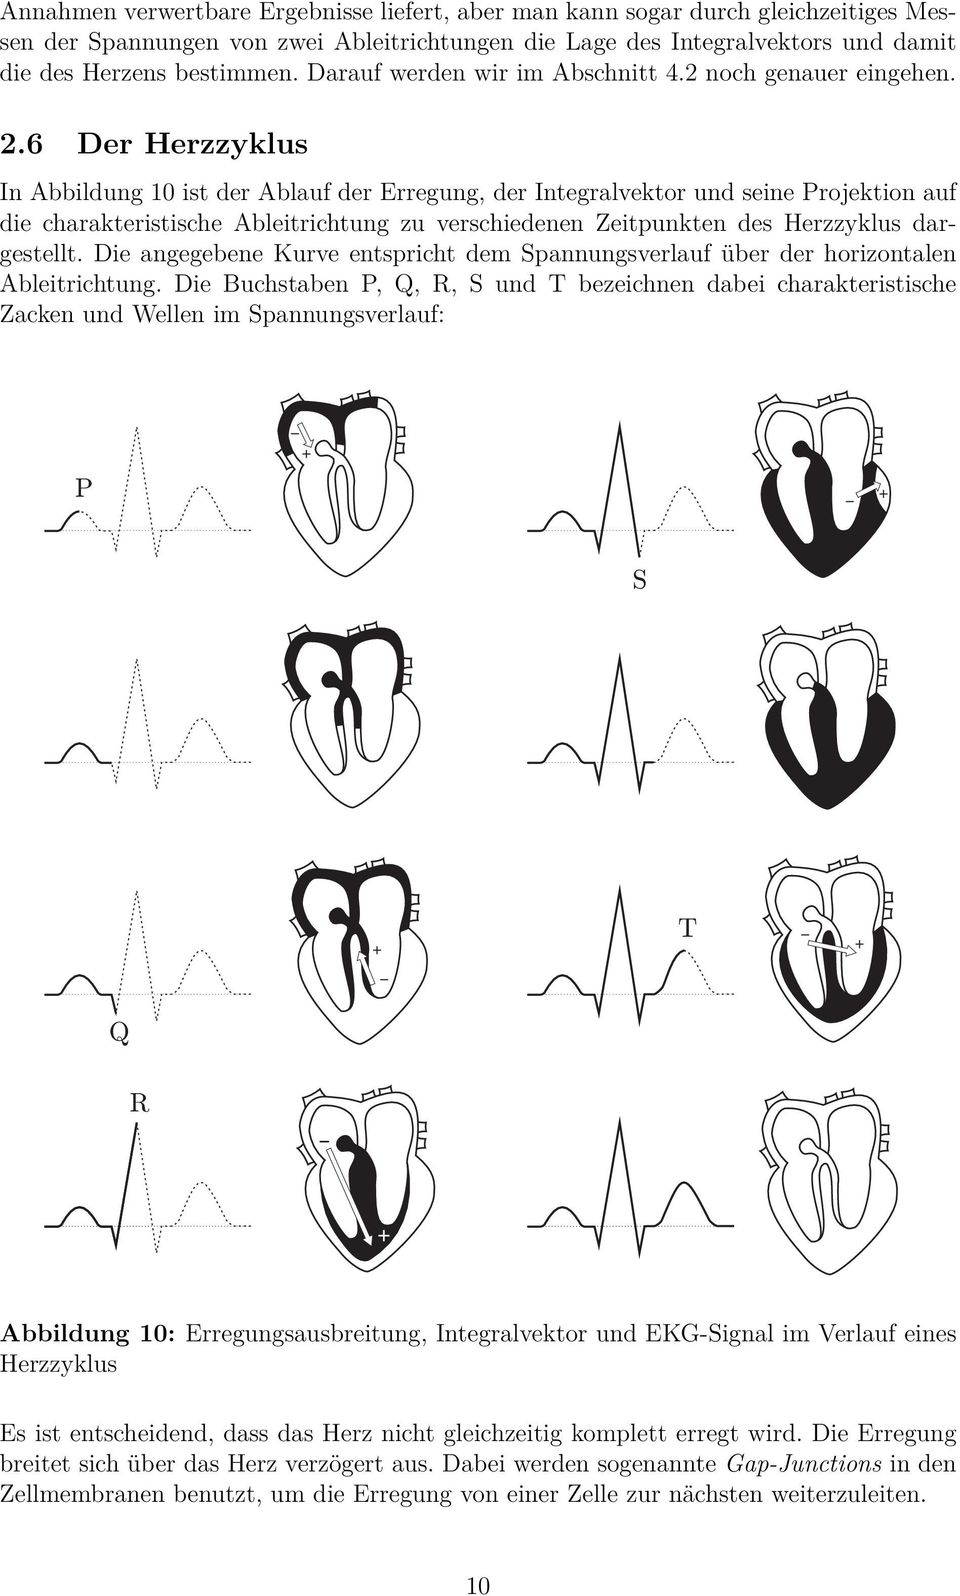 6 Der Herzzyklus In Abbildung 10 ist der Ablauf der Erregung, der Integralvektor und seine Projektion auf die charakteristische Ableitrichtung zu verschiedenen Zeitpunkten des Herzzyklus dargestellt.